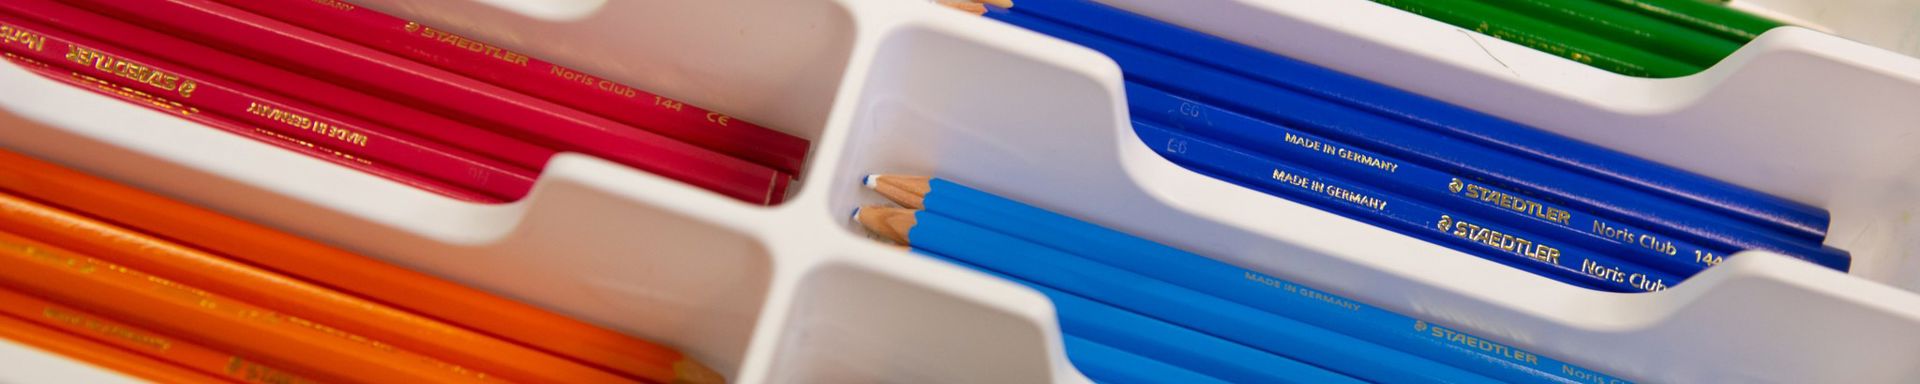 Eri värisiä kyniä lajiteltua kynälaatikkoon.